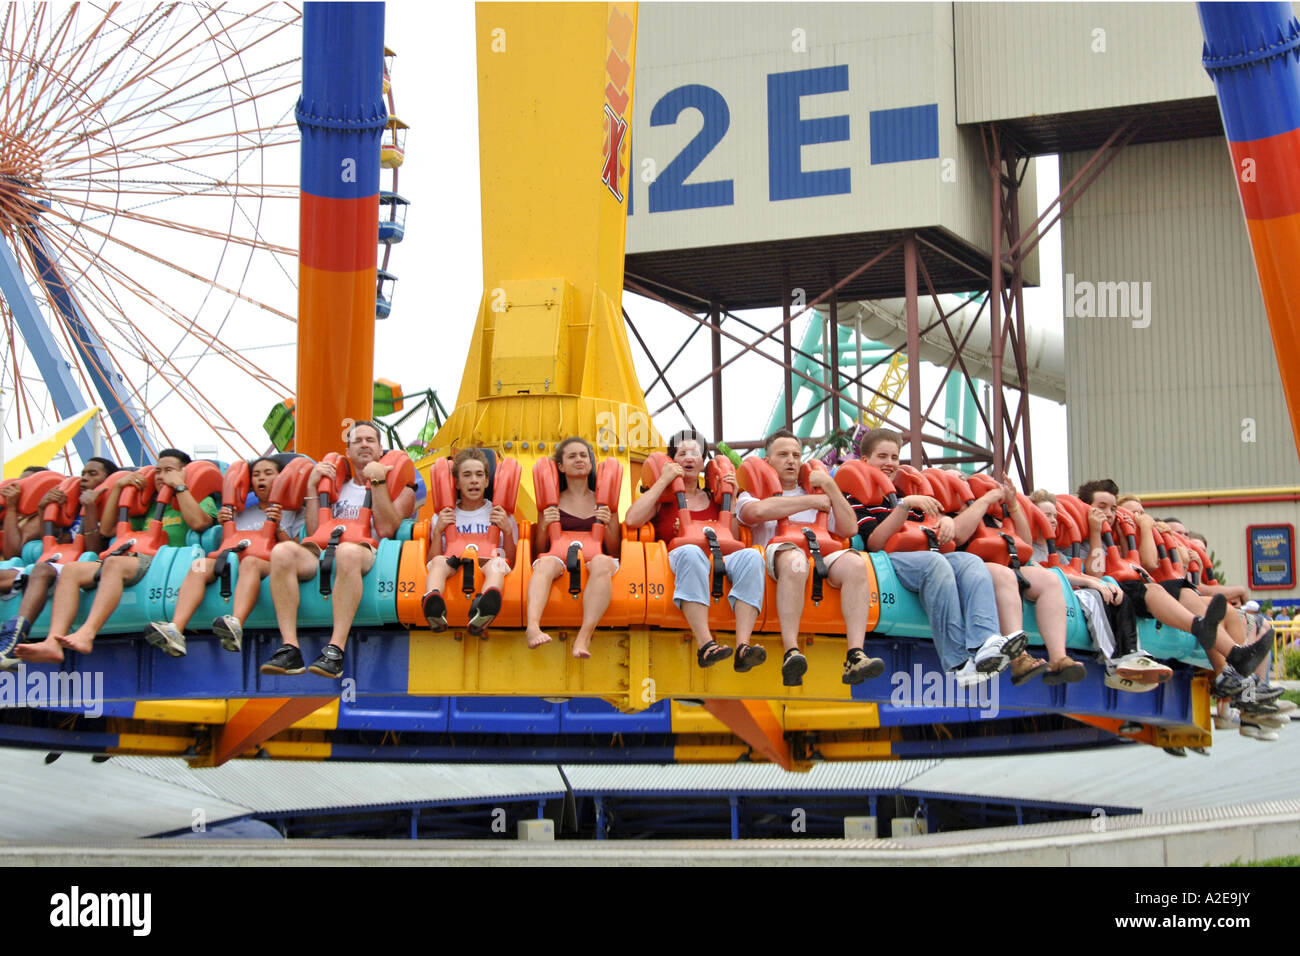 Les gens dans un cerclage ride at Cedar Point Amusement Park Sandusky, OH Banque D'Images